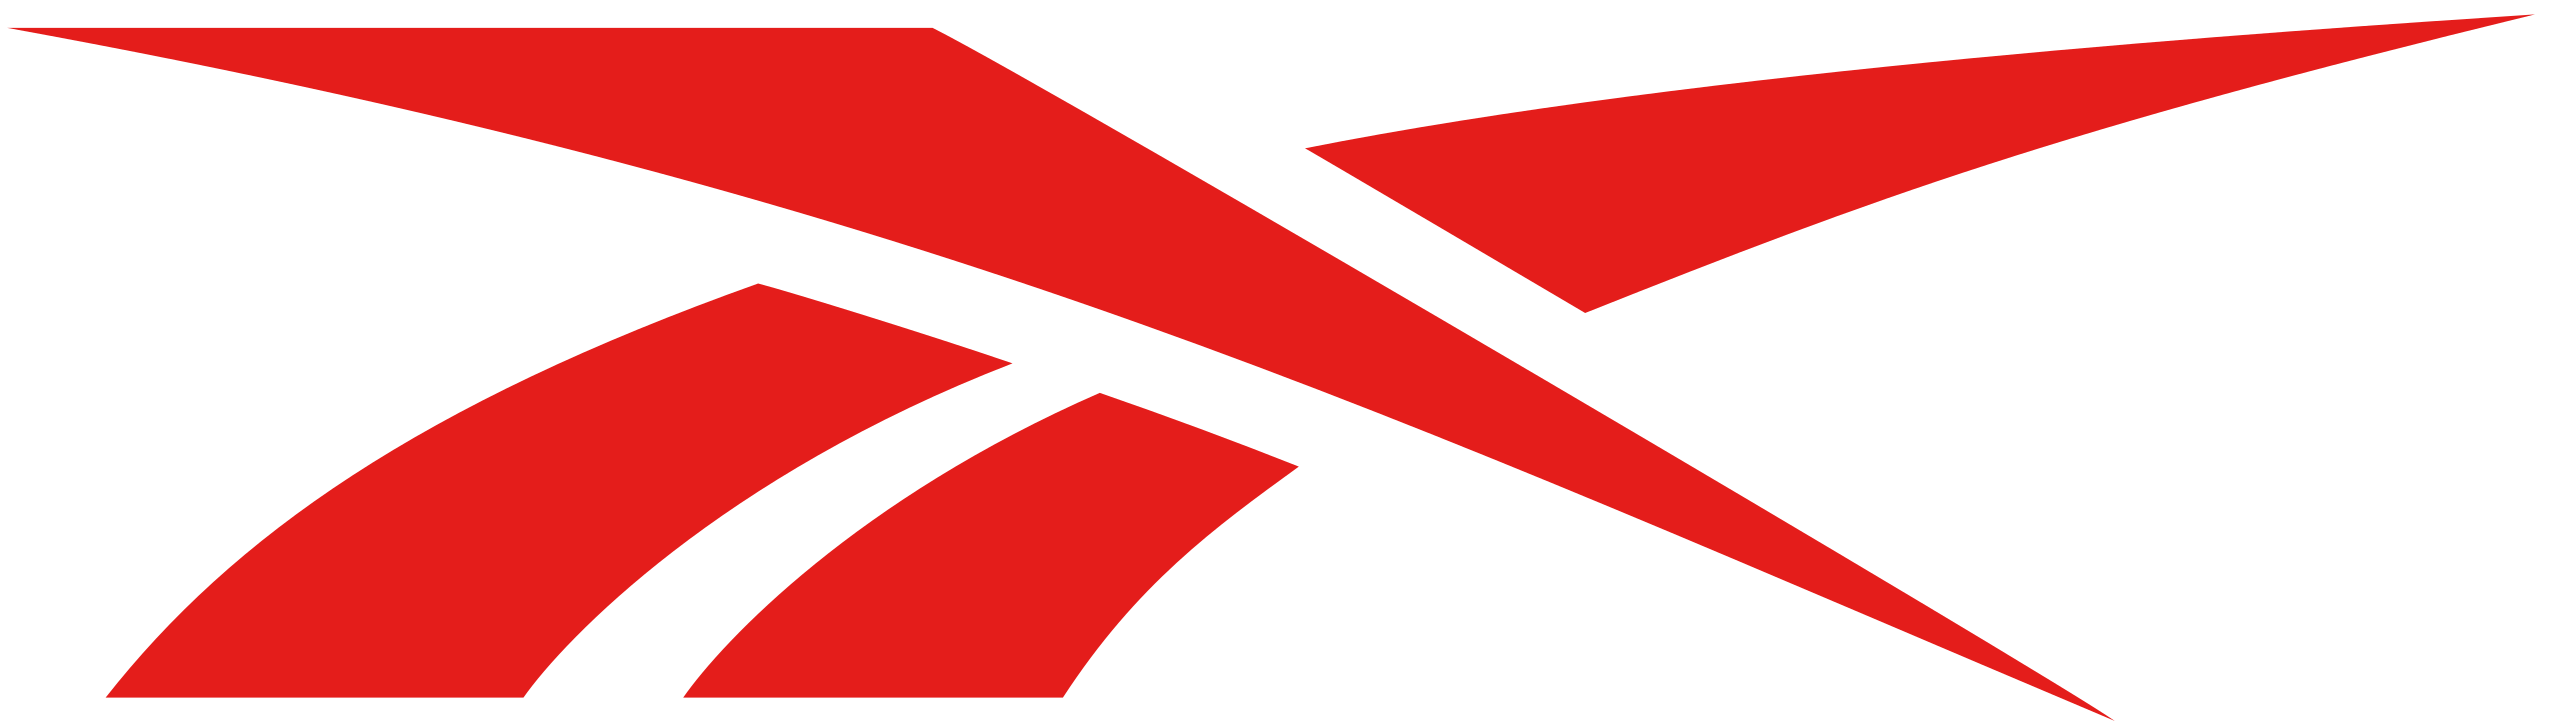 File:Reebok logo.svg Wikimedia Commons